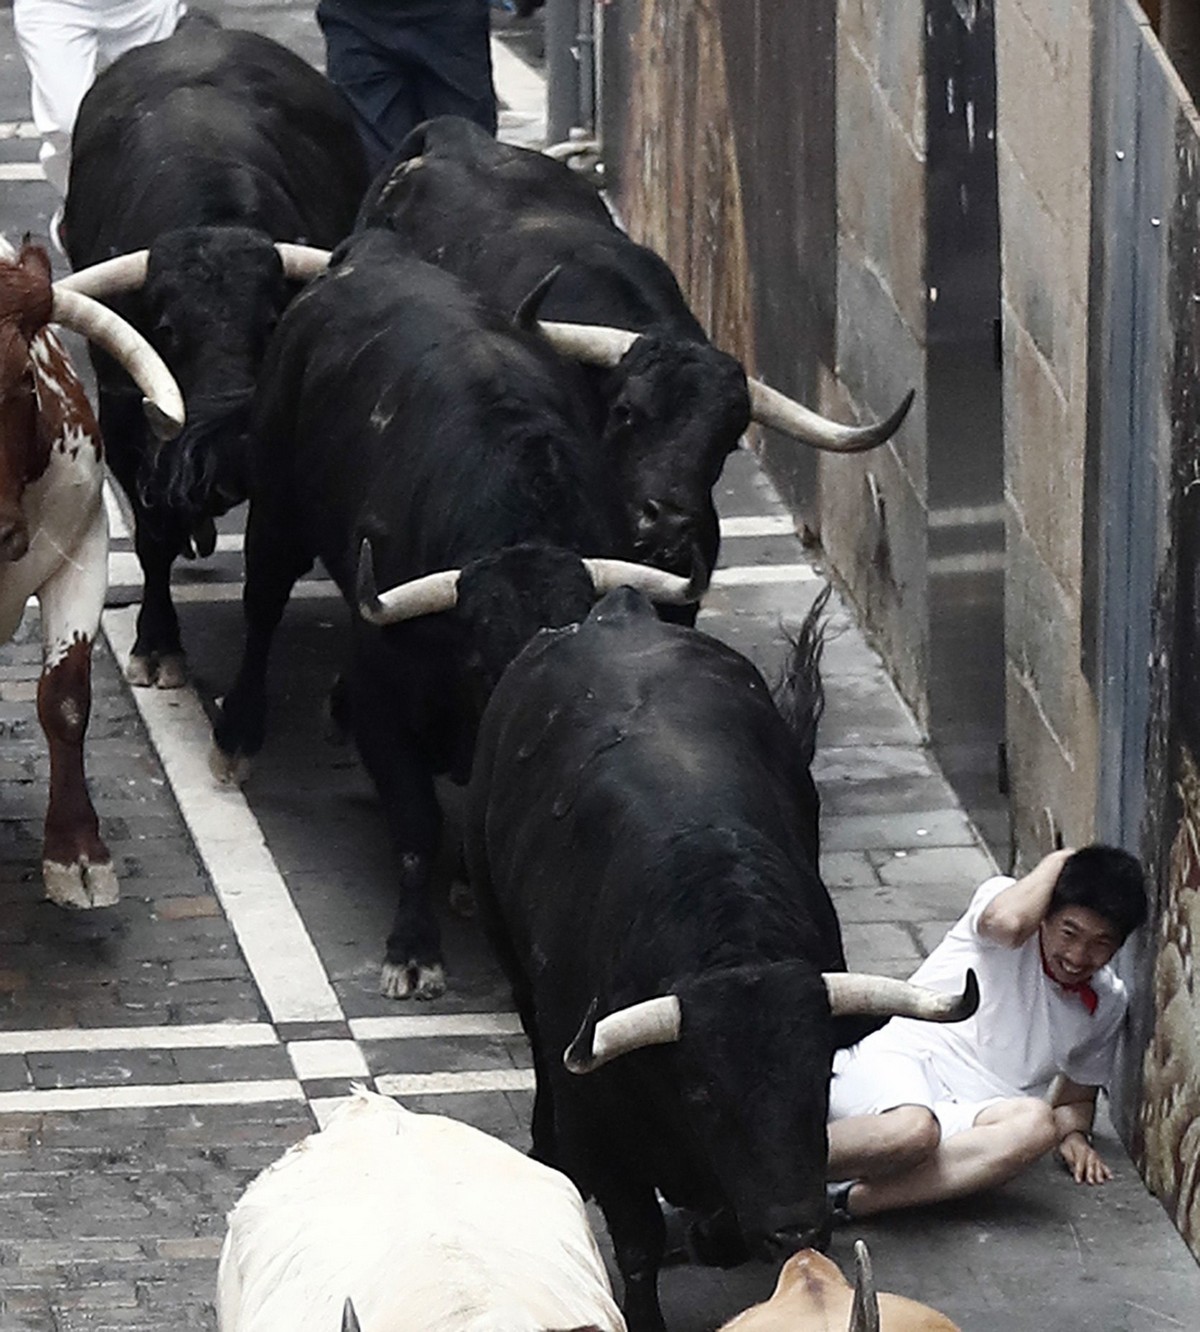 Традиционный забег с быками в Испании 2019